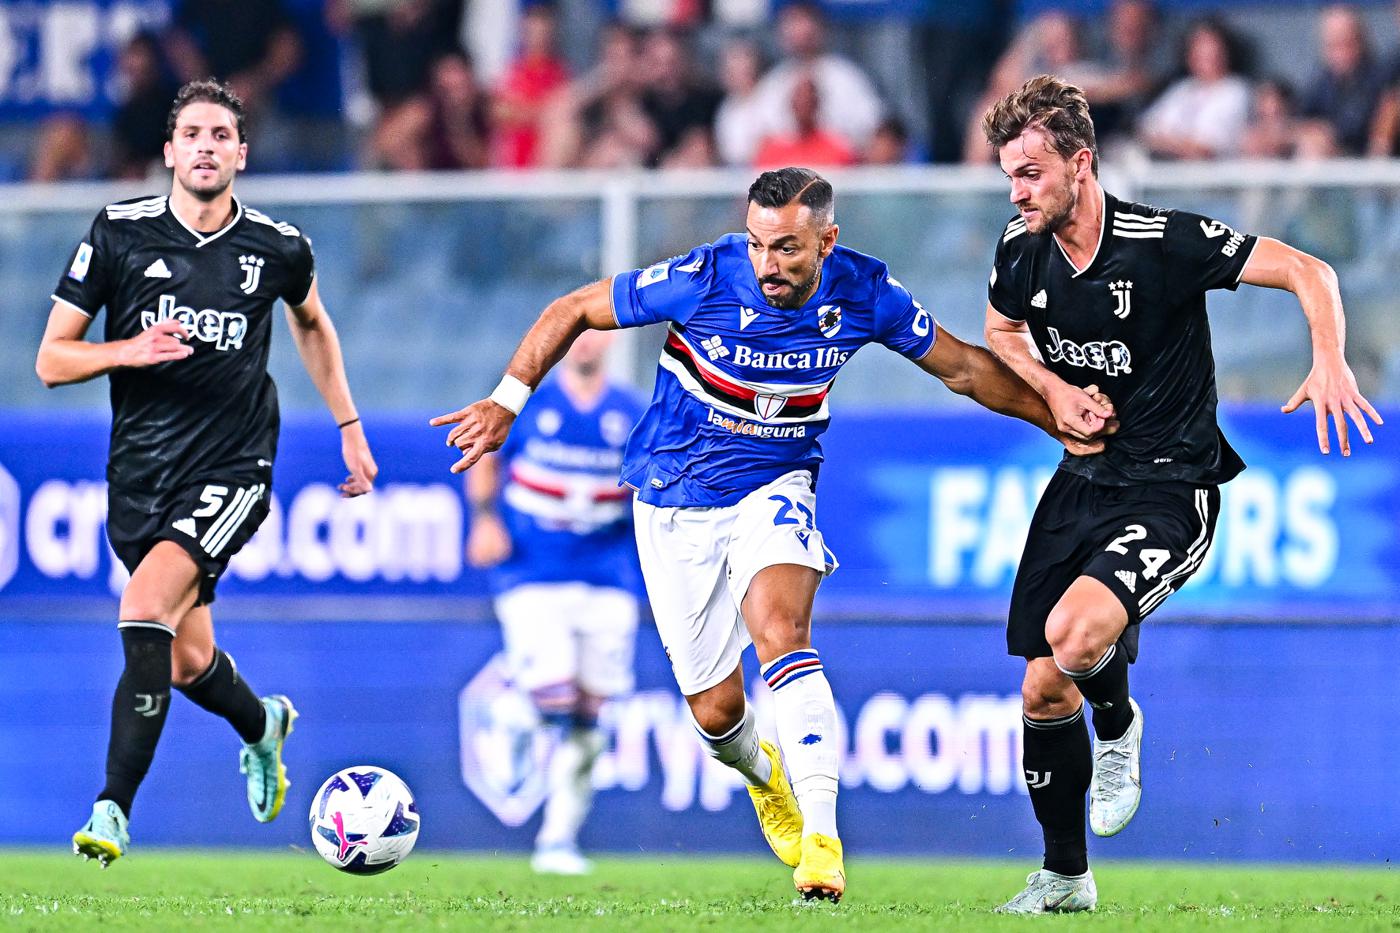 Juventus - Sampdoria - 4-2. Italienische Meisterschaft, Runde 26. Spielbericht, Statistik.